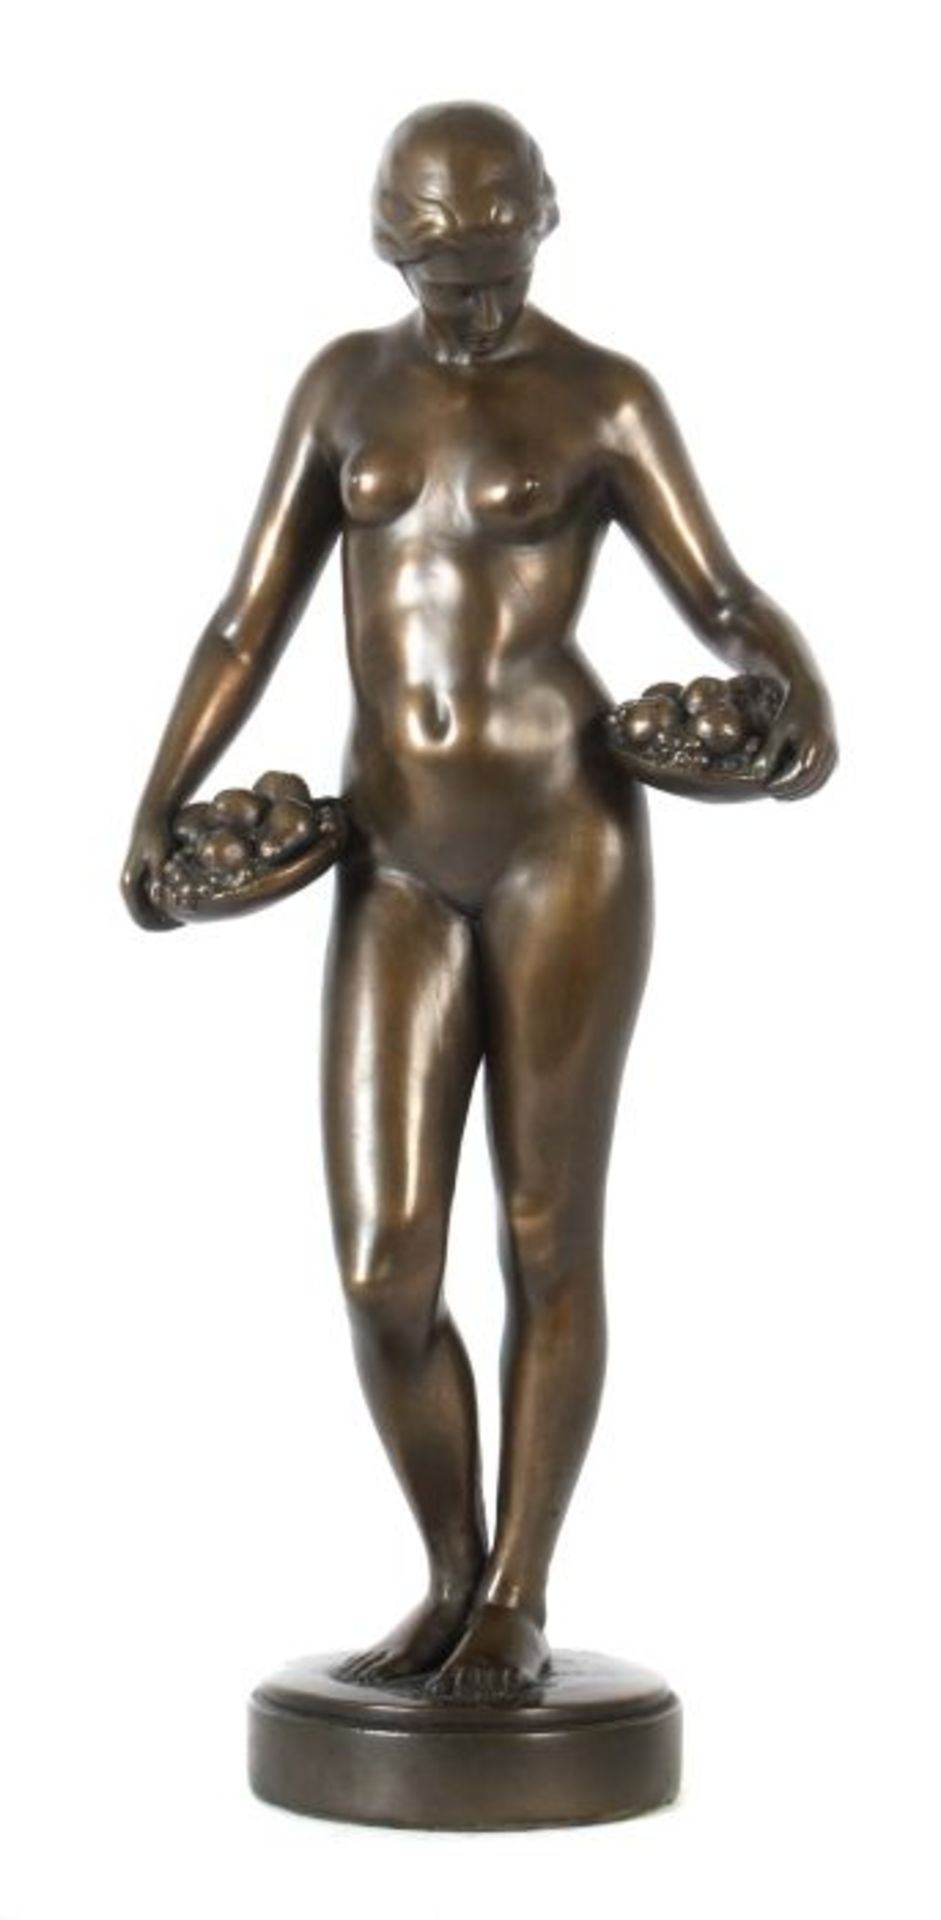 Bildhauer des 20. Jh "Demeter", Galvanoplastik, vollplastische Figur eines weiblichen Aktes,